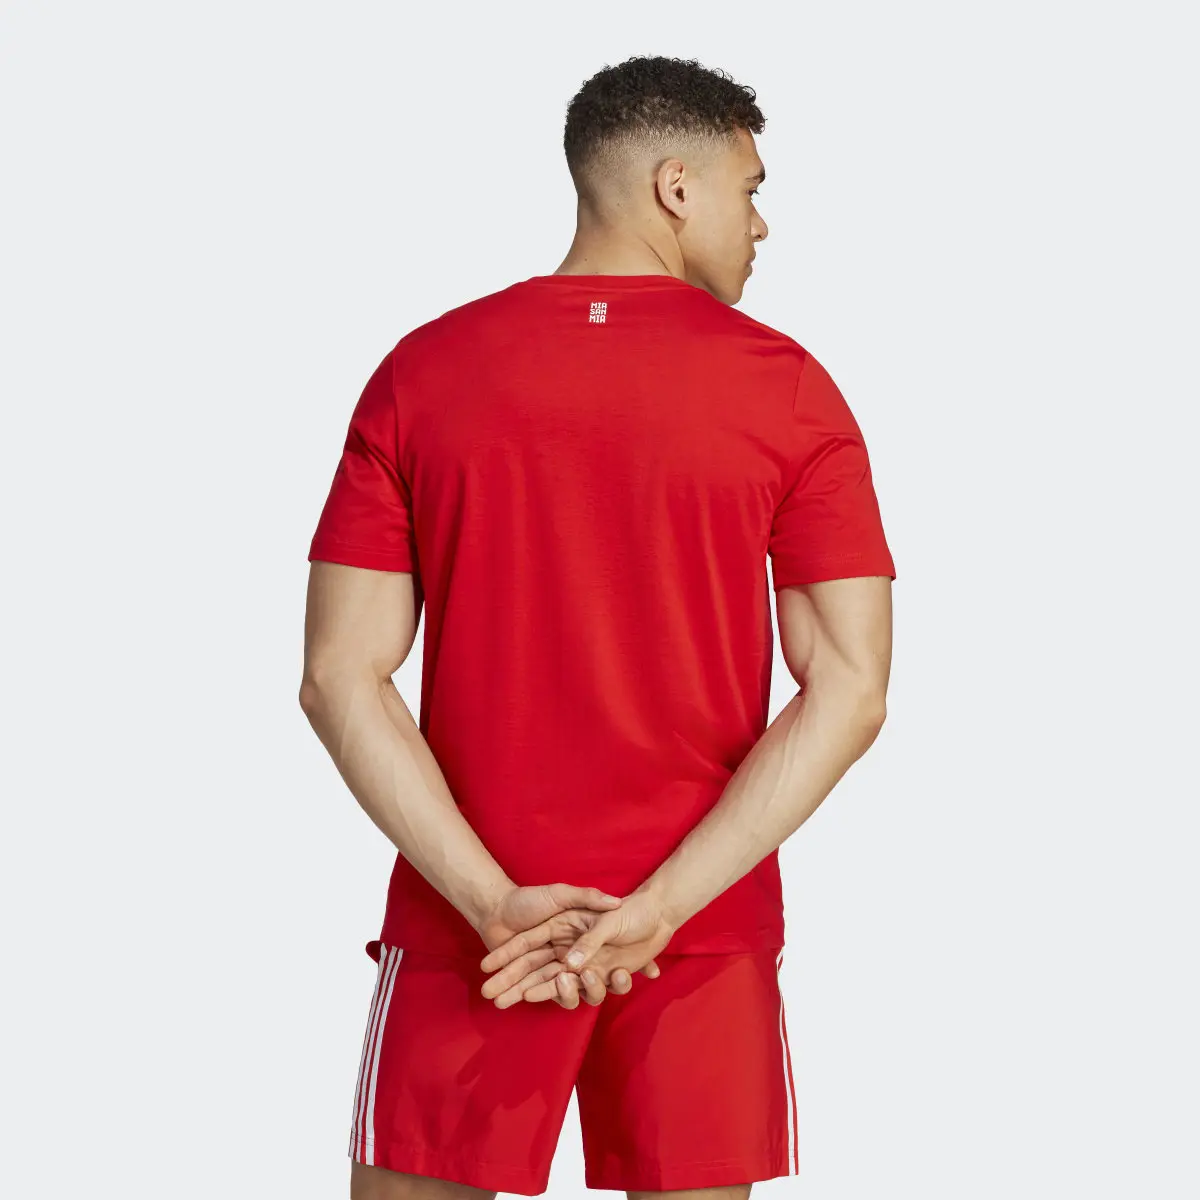 Adidas T-shirt DNA do FC Bayern München. 3